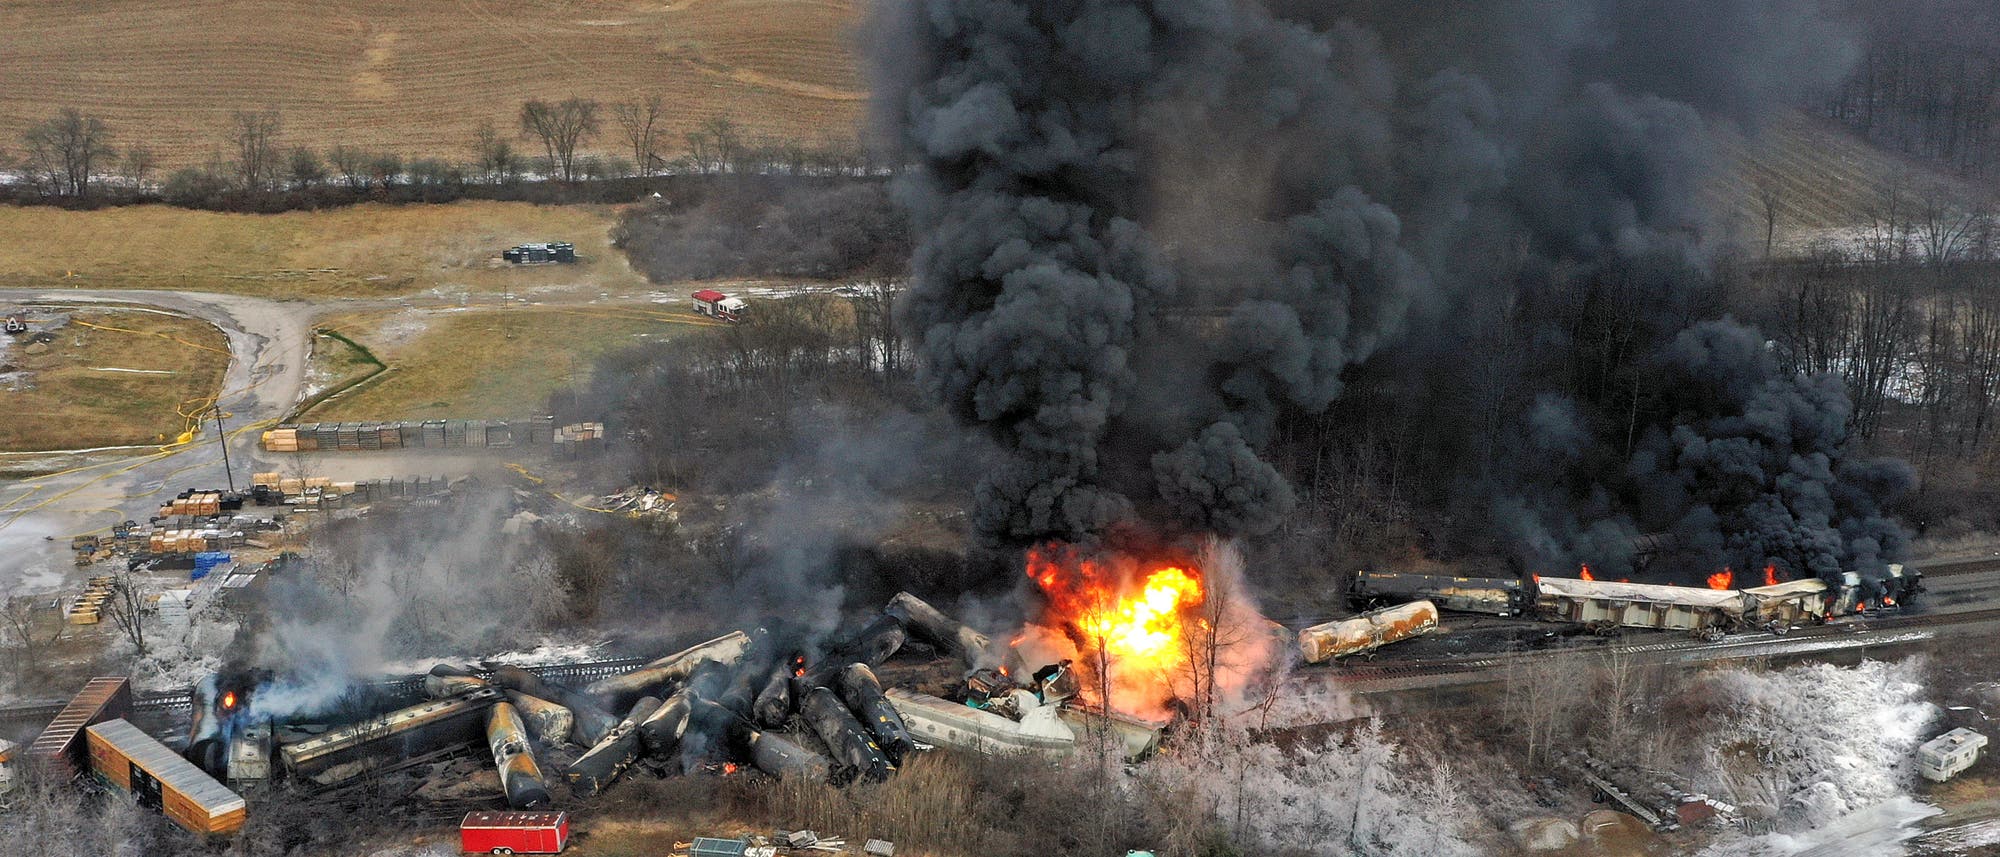 Eine Luftbildaufnahme zeigt die Ausmaße des Zugunglücks: Die Waggons des Güterzugs sind entgleist und haben sich ineinandergeschoben. Einige Waggons stehen in Flammen und es sind schwarze Rauchwolken zu sehen.